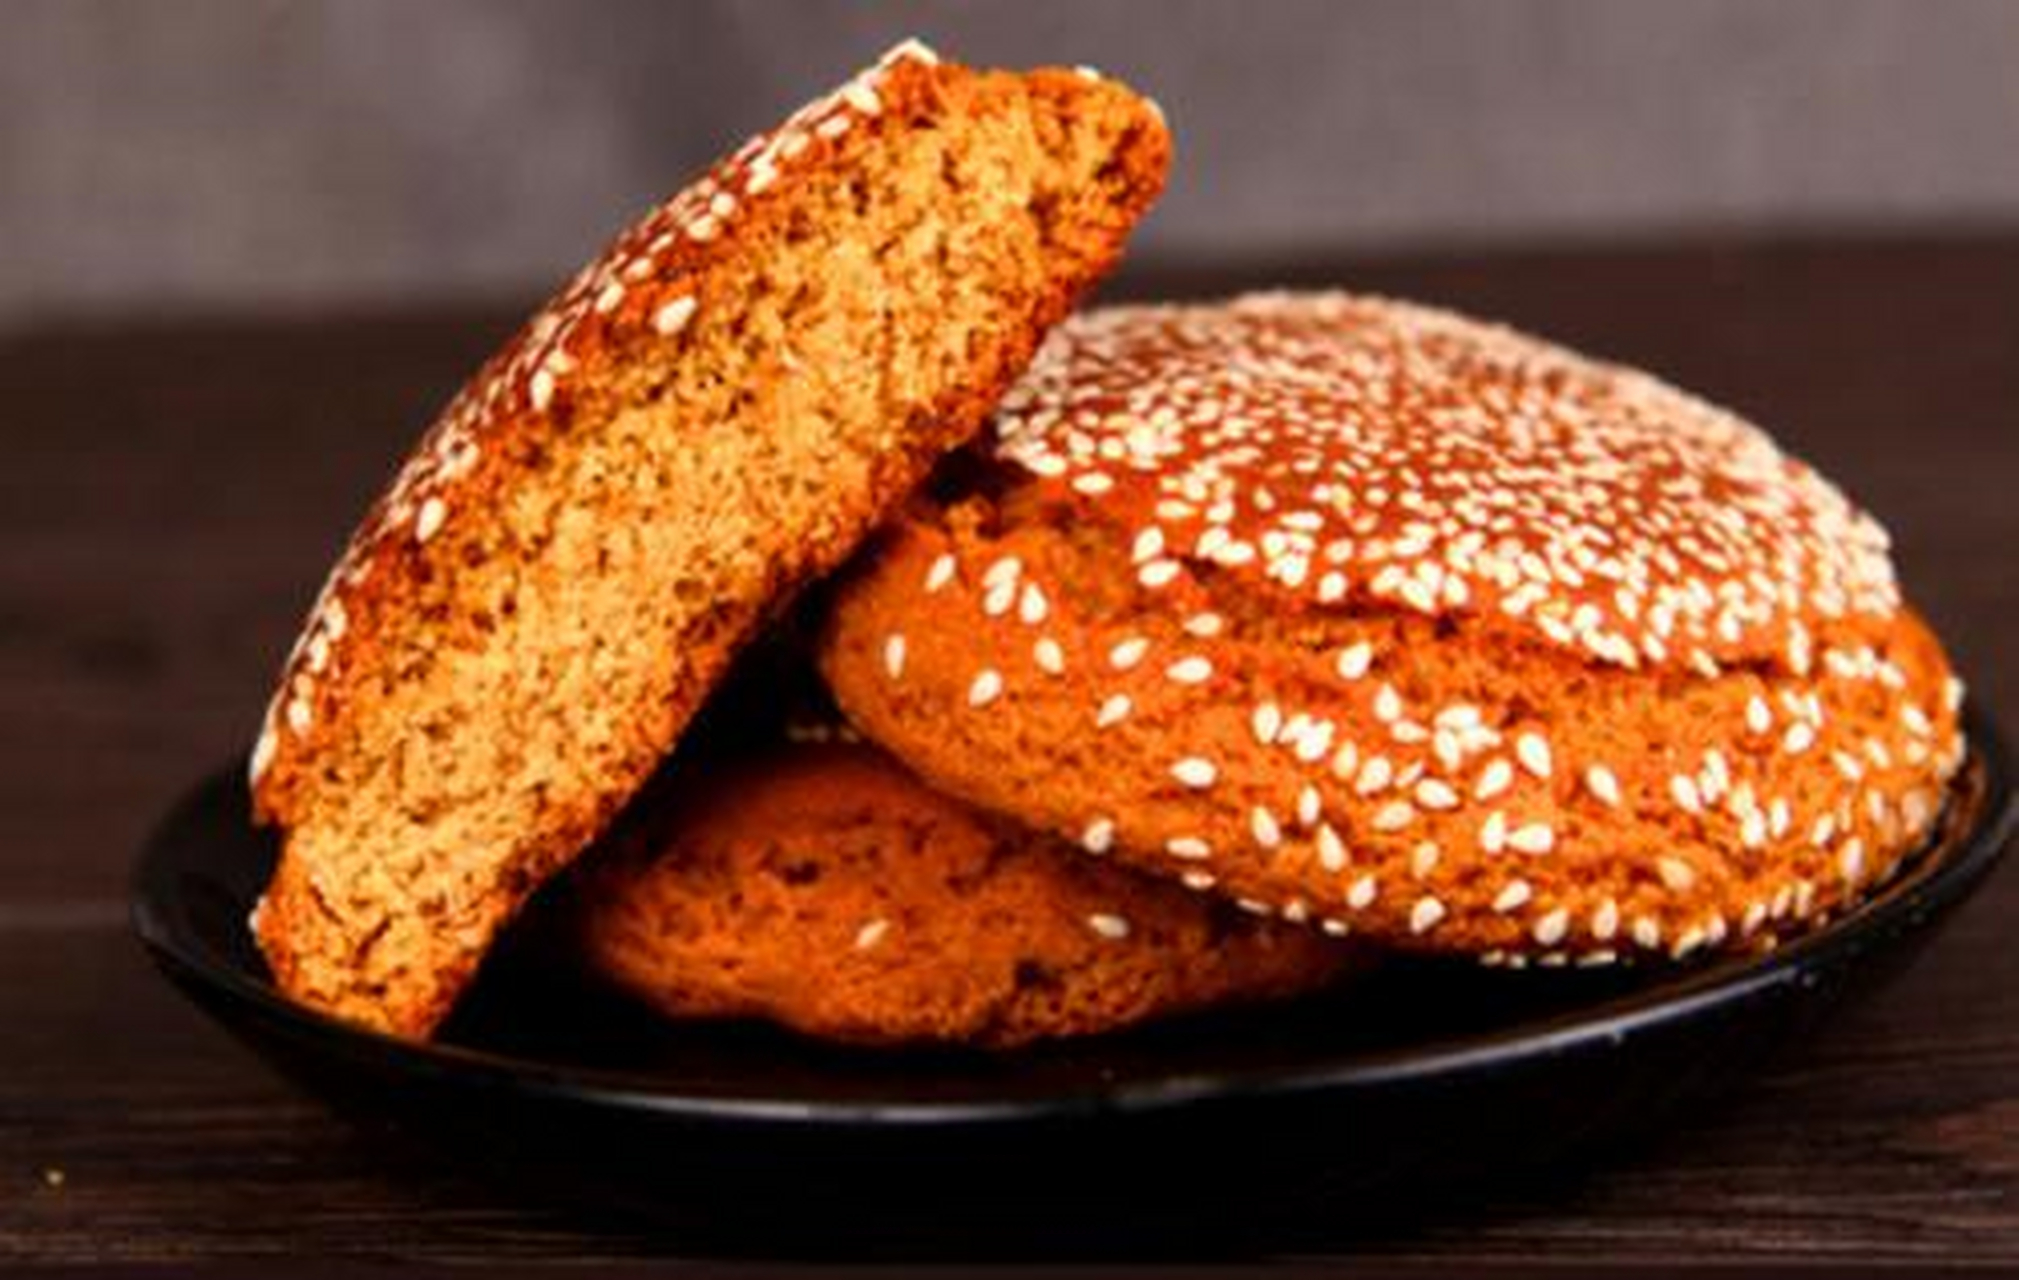 太谷饼是山西省传统名吃,因产于太谷县得名